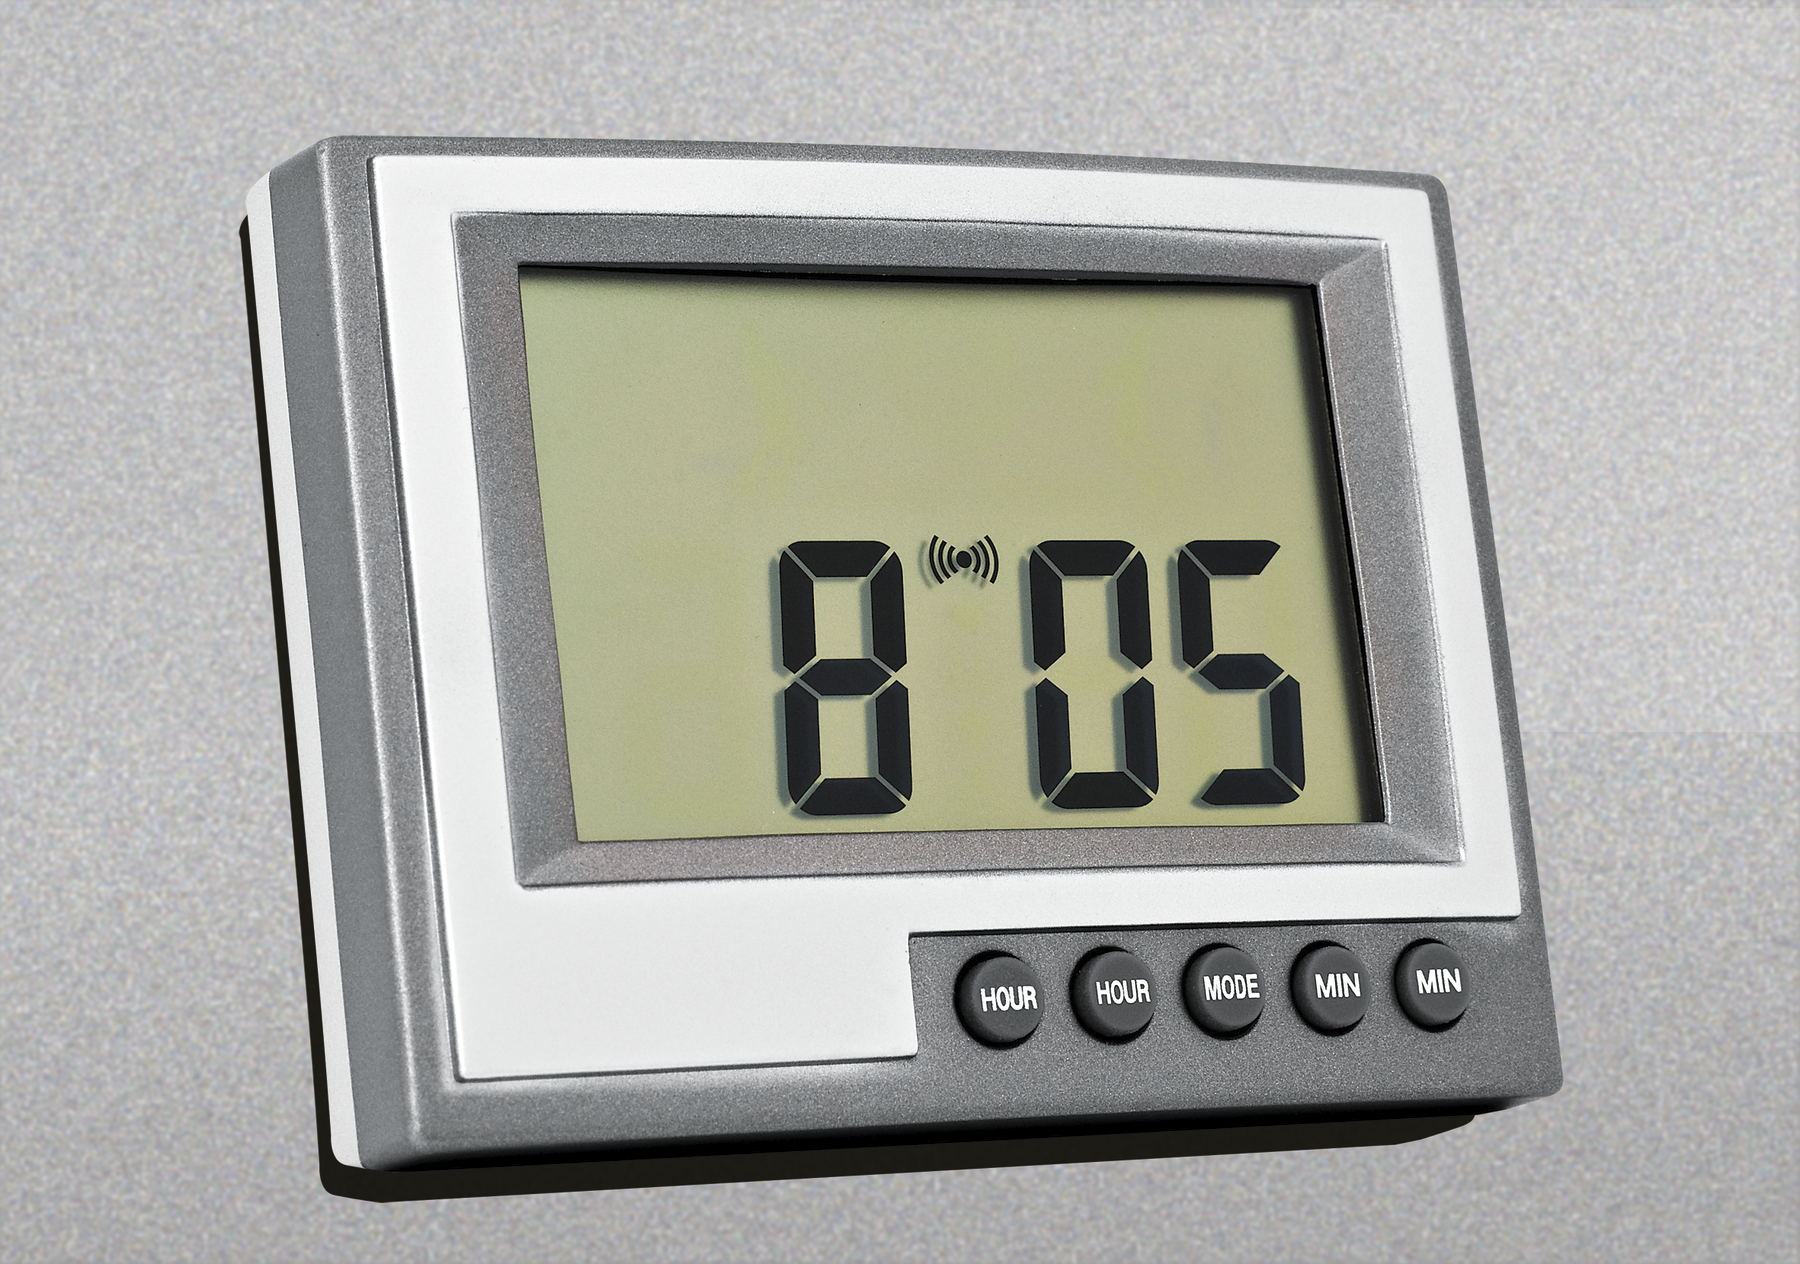 Fotografia. Um relógio digital horizontal de cor cinza, com botões na parte inferior. Na tela, a indicação do horário em números arábicos de cor preta: 8 horas e 5 minutos.